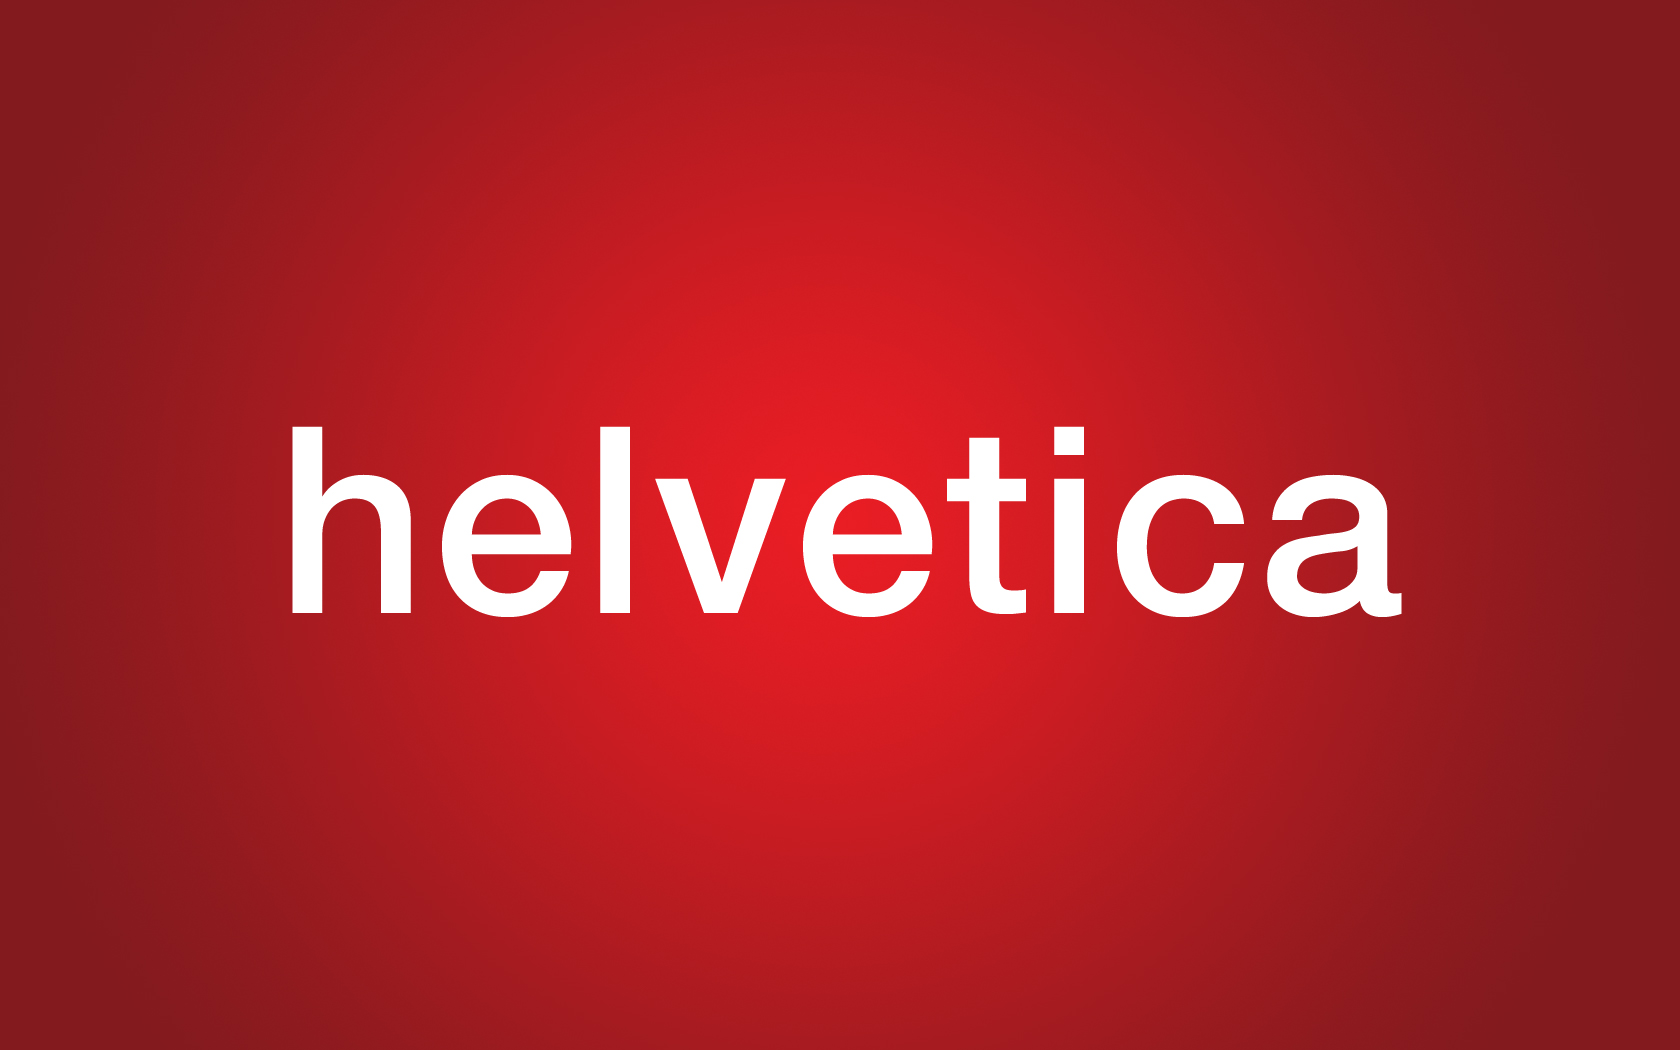 Helvetica_by_El_Felipe.jpg